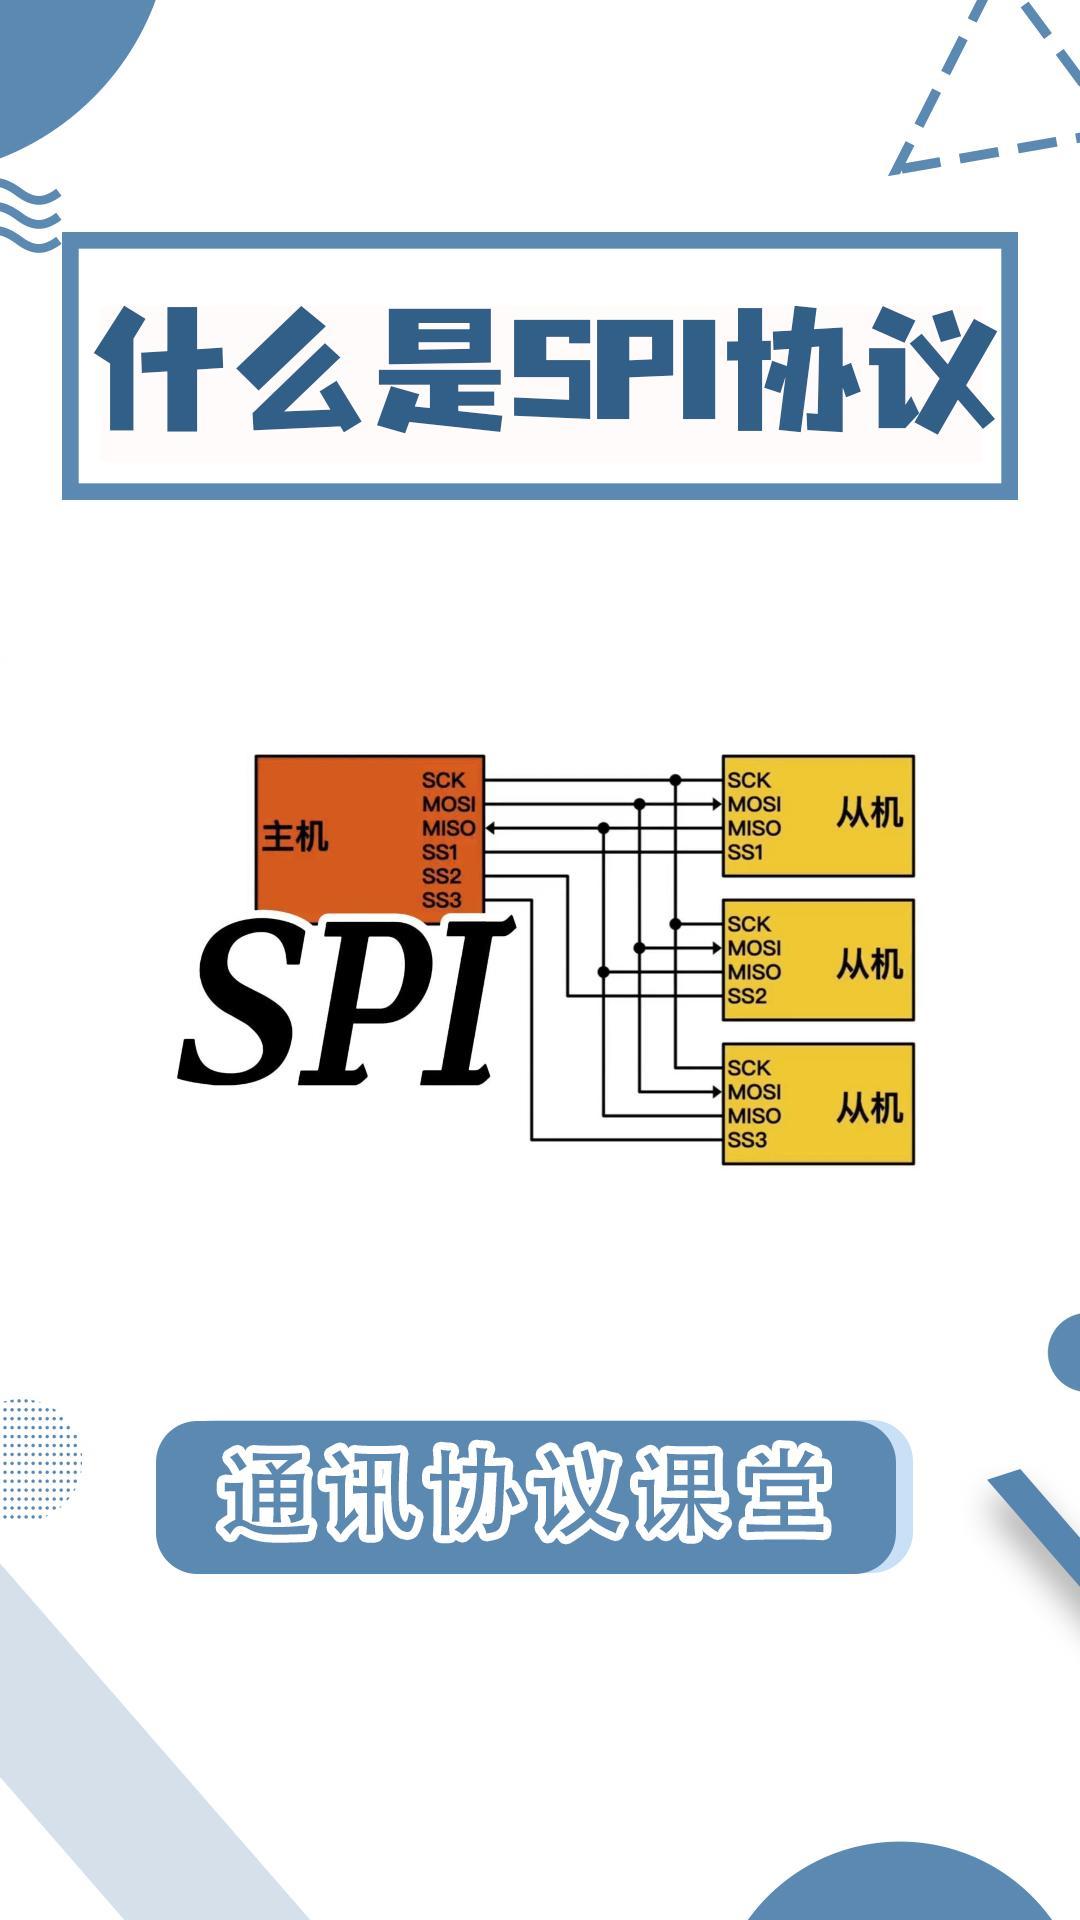 SPI通訊協議你真的懂嗎？5分鐘教#SPI #總線 #串口通訊 #通訊 #電路知識 #電子工程師 #科工機械 